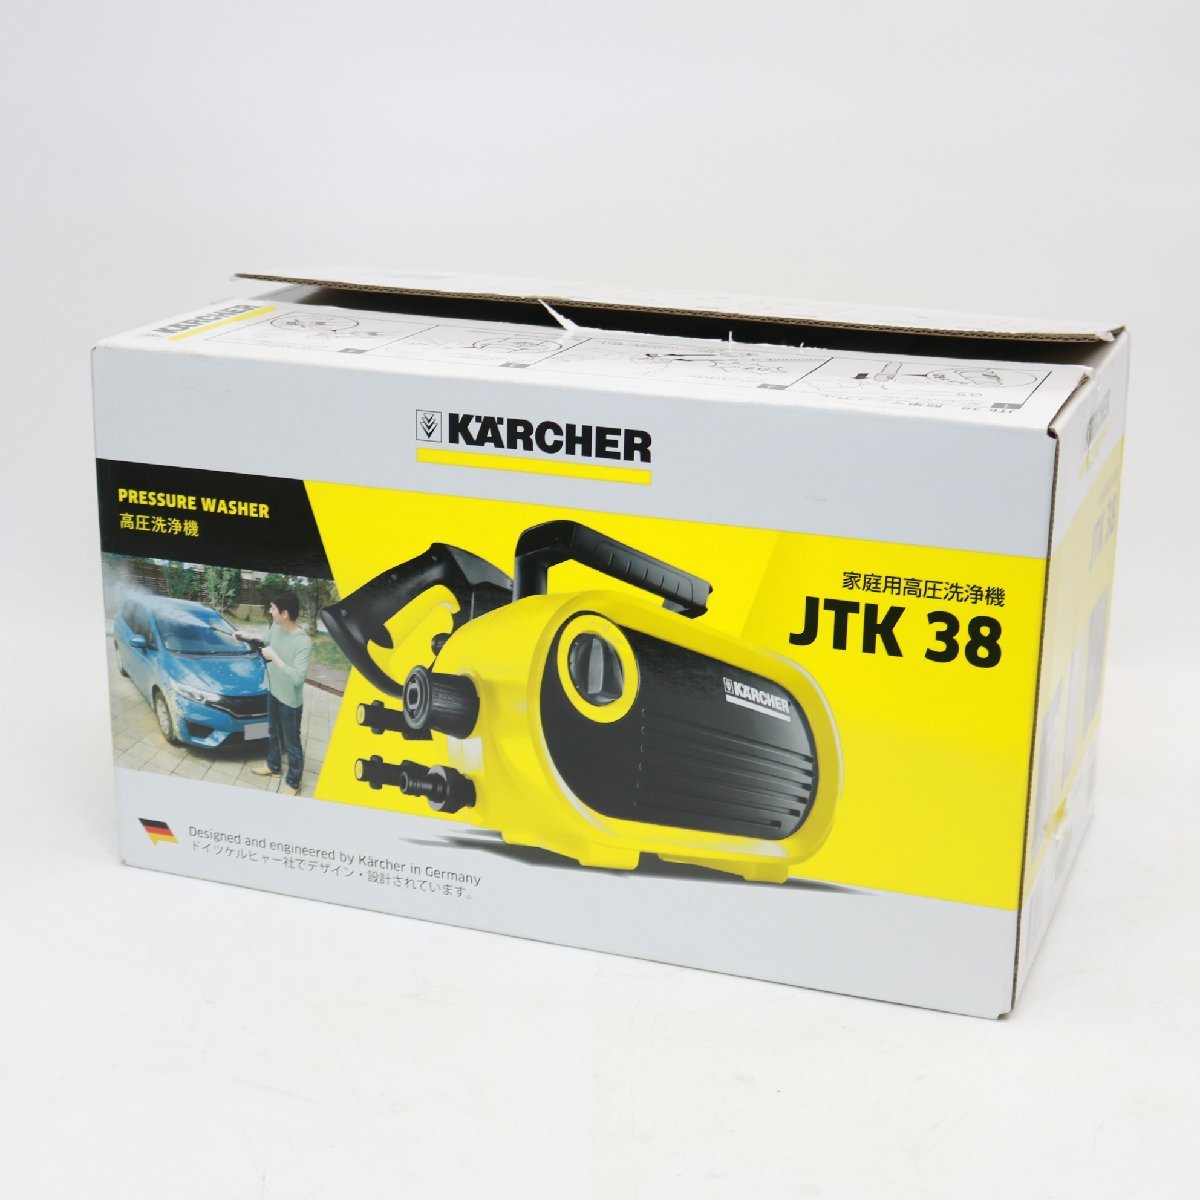 東京都中央区にて ケルヒャー 家庭用高圧洗浄機 JTK38  を出張買取させて頂きました。